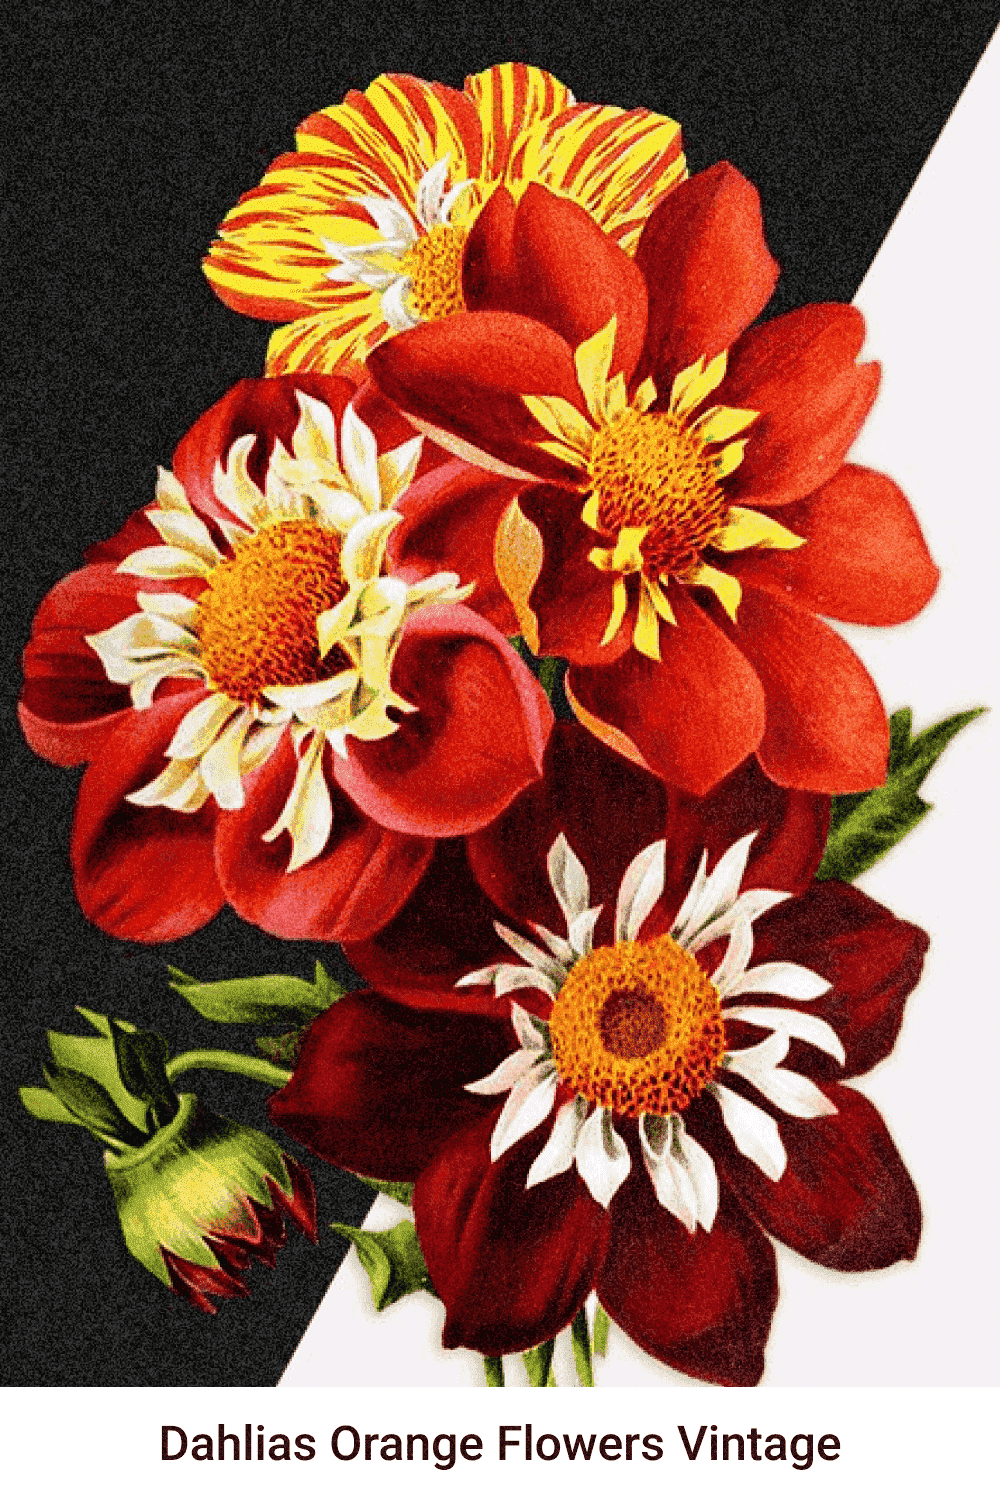 Dahlias Orange Flowers Vintage - Pinterest Image Preview.